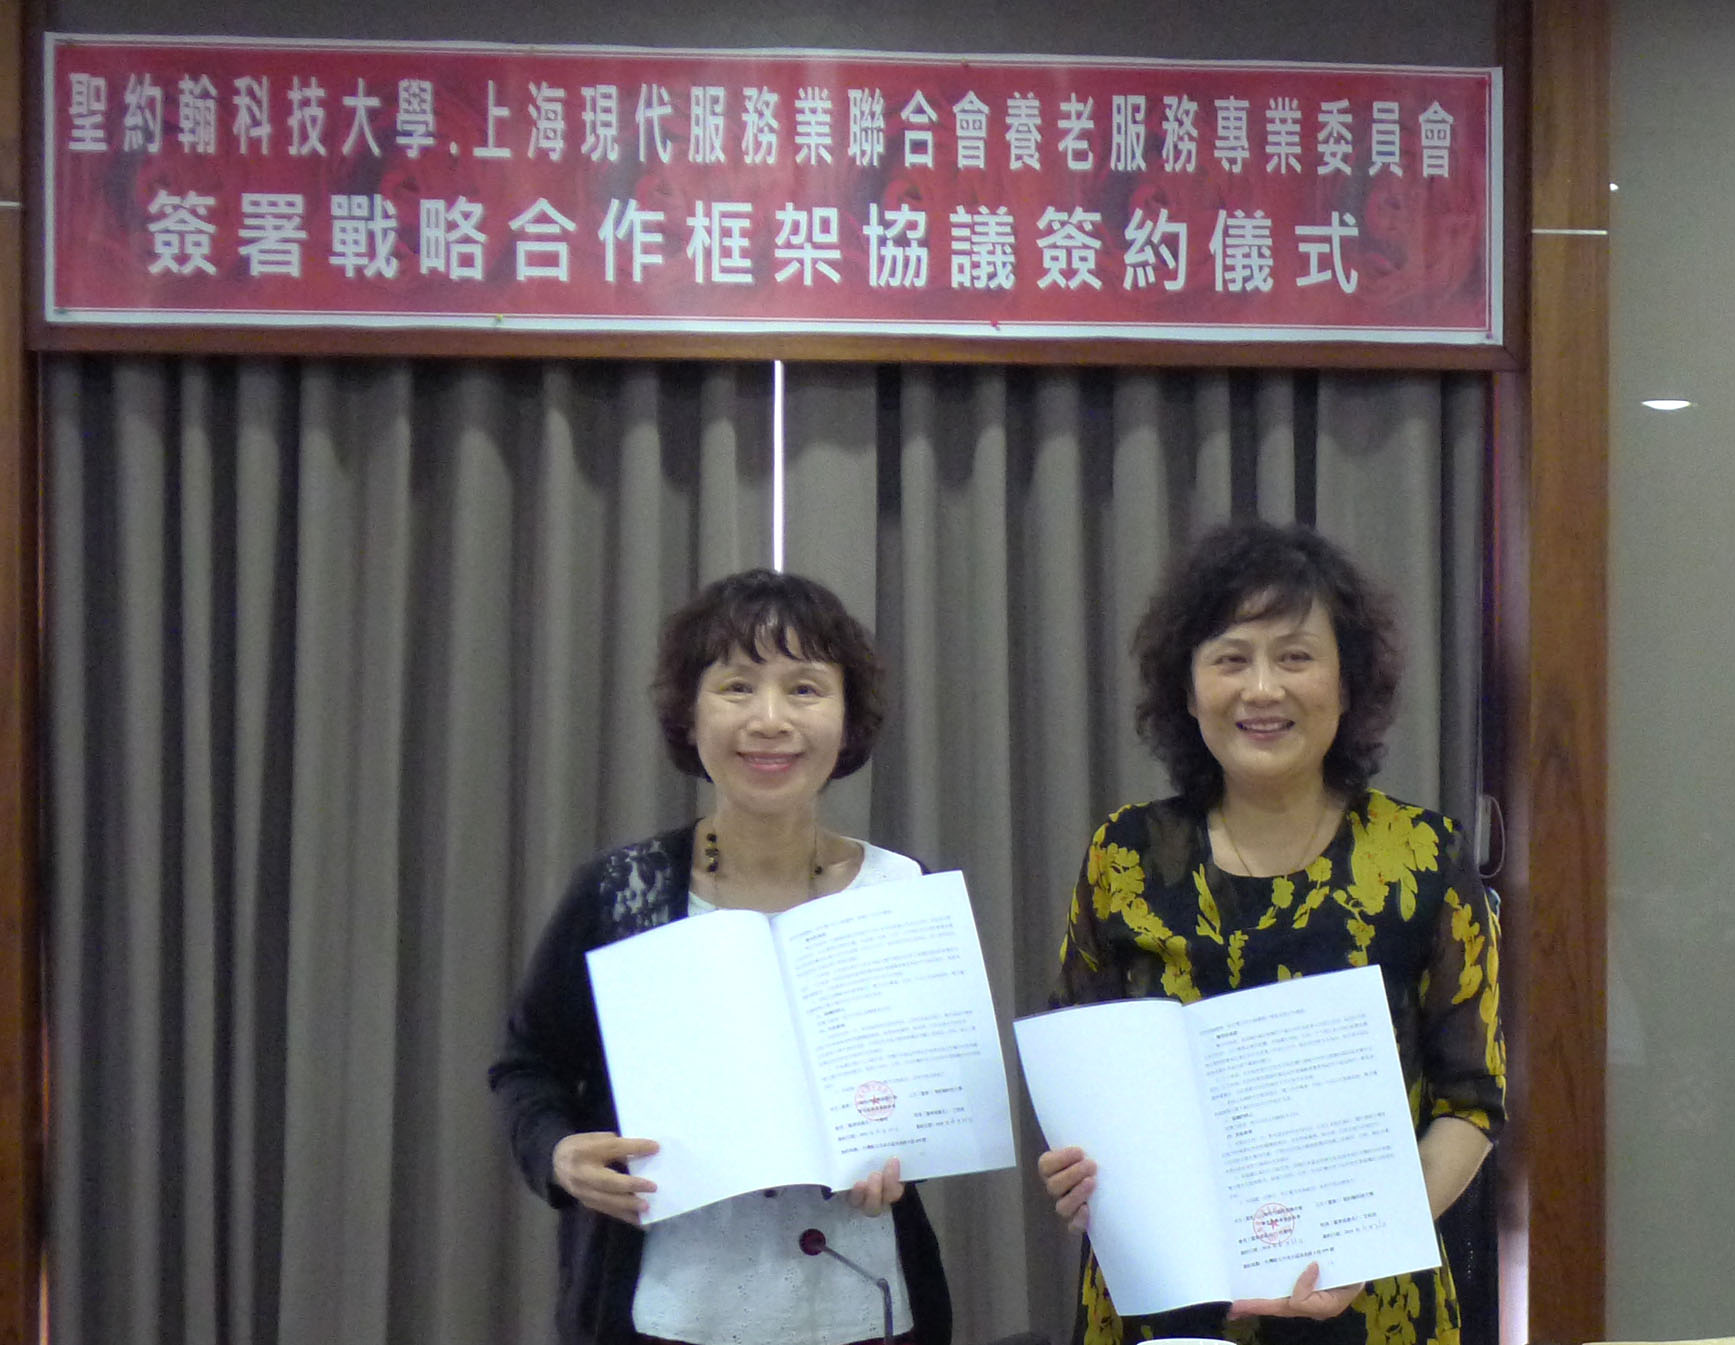 聖約翰科大謝銀沙主任秘書（左）與上海養老專委會蔣勤秘書長（右）簽署戰略合作框架協議，雙方攜手建立兩岸安養（養護） 人才培訓及服務標準化模式，共創雙贏